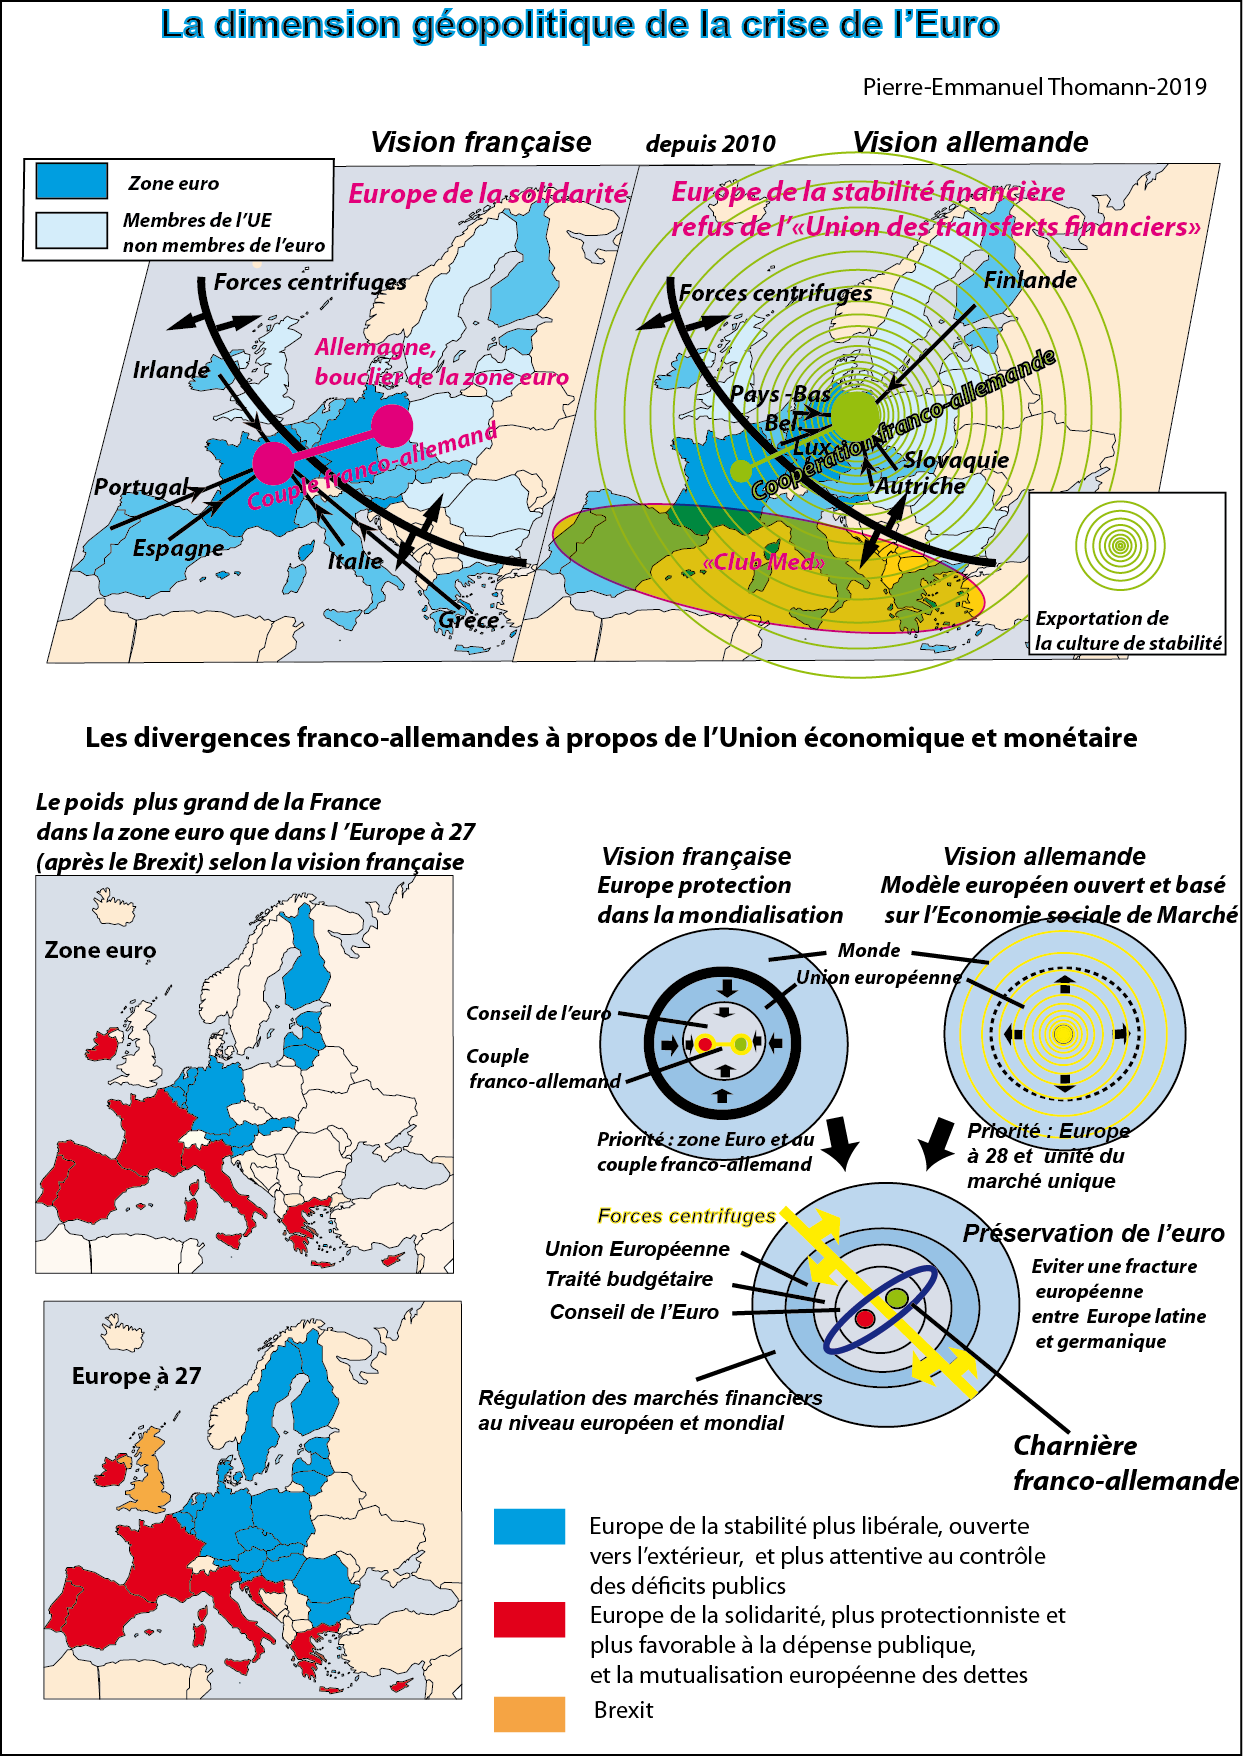 Plan de relance européen et torpillage du projet de renforcement de la zone euro comme centre de gravité géopolitique de l’UE